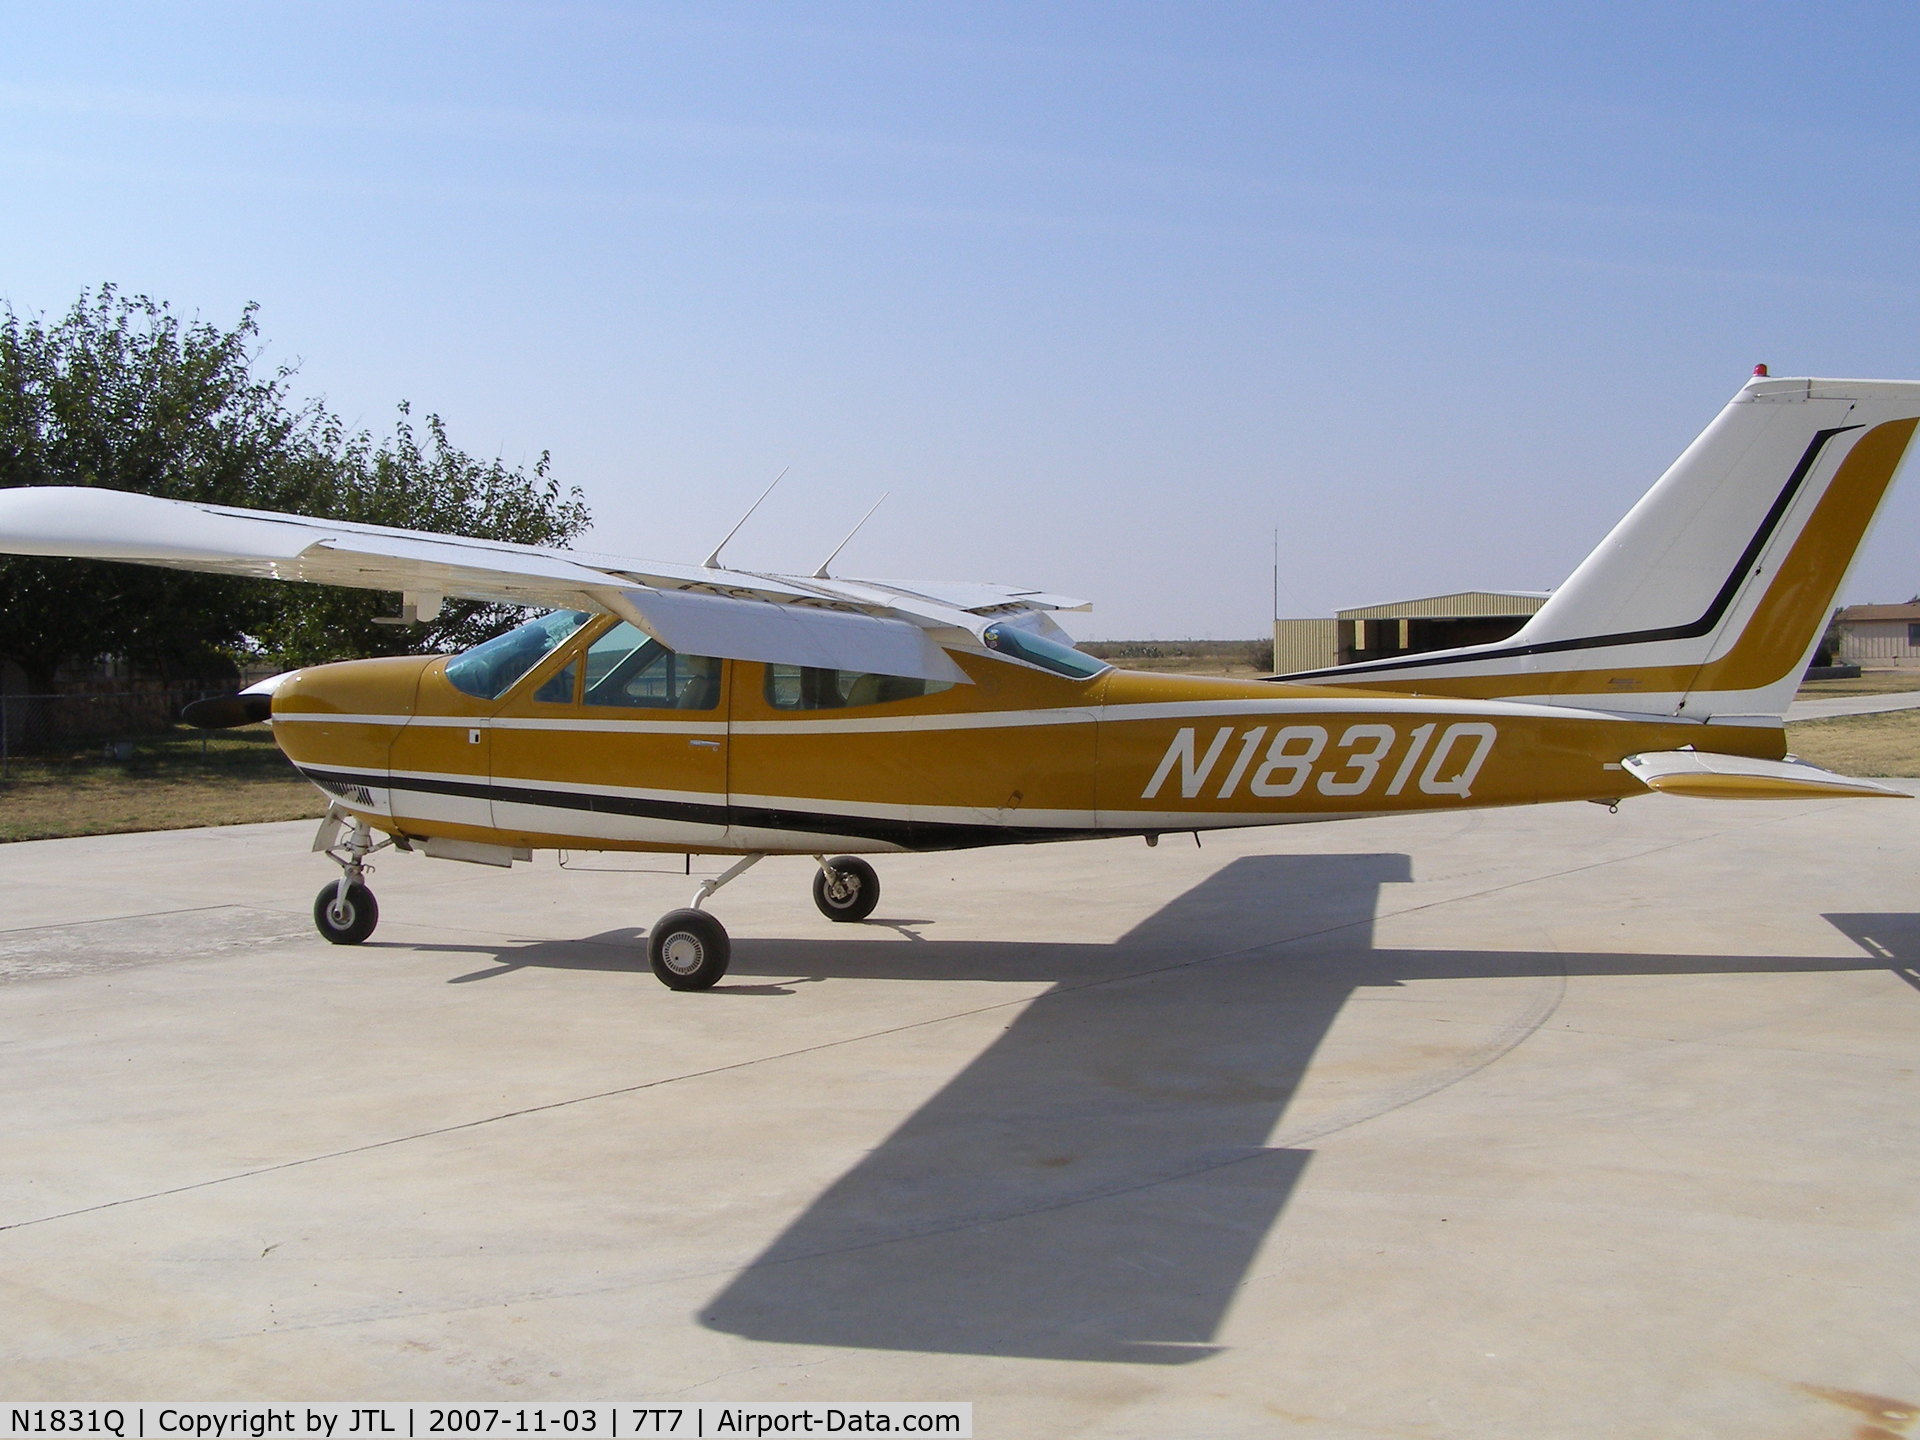 N1831Q, 1971 Cessna 177RG Cardinal C/N 177RG0231, N1831Q at its home base